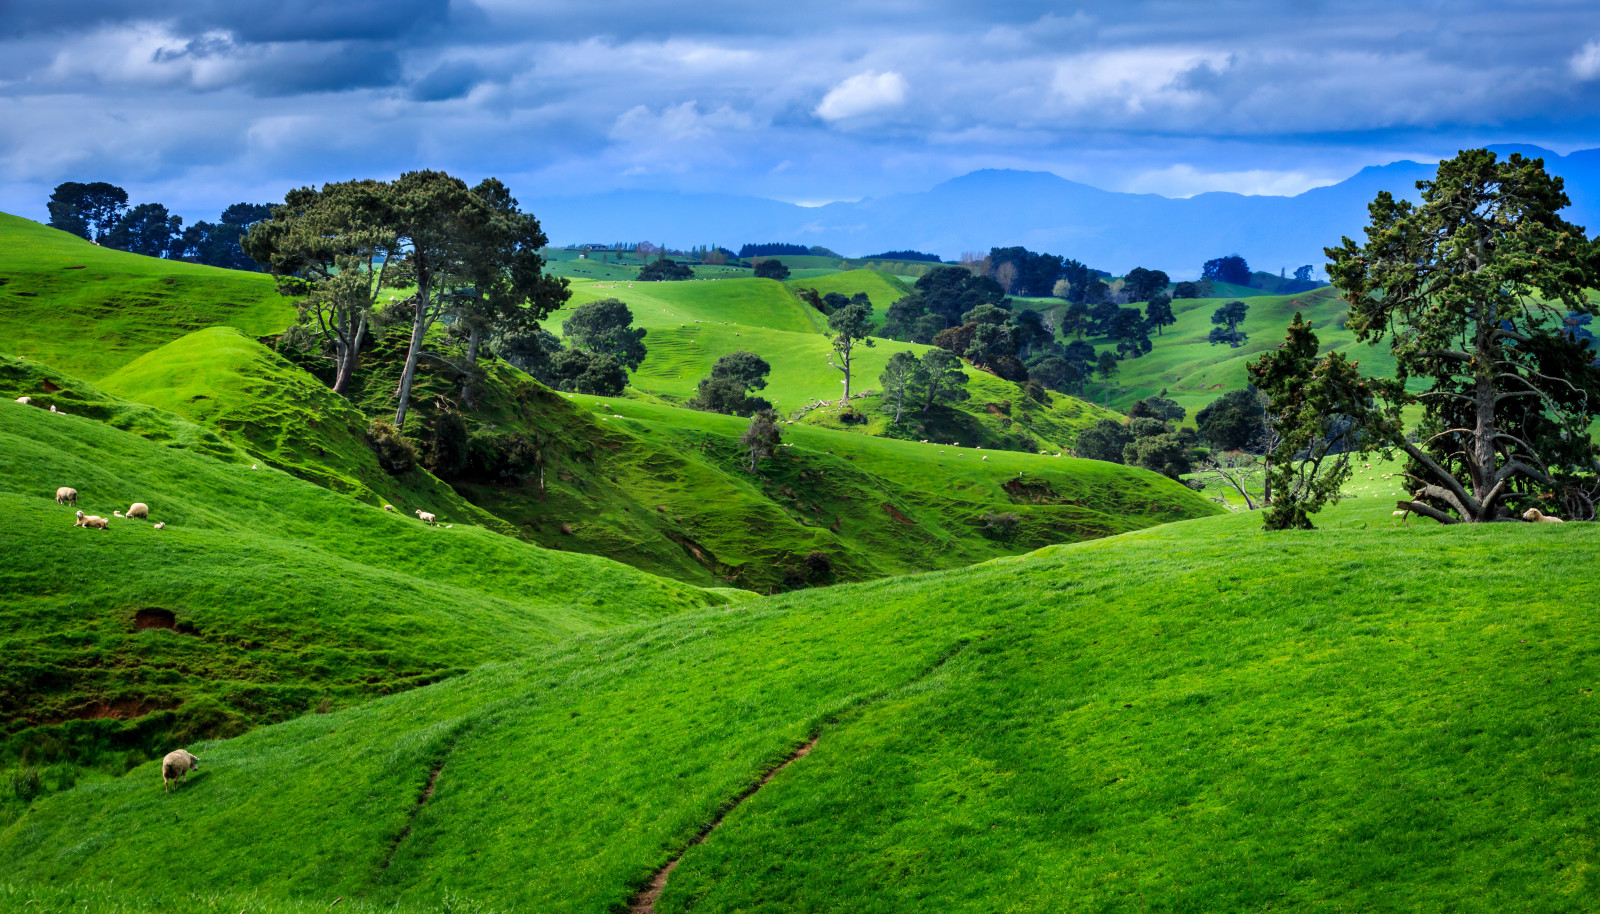 pohon, bidang, awan, gunung, Selandia Baru, padang rumput